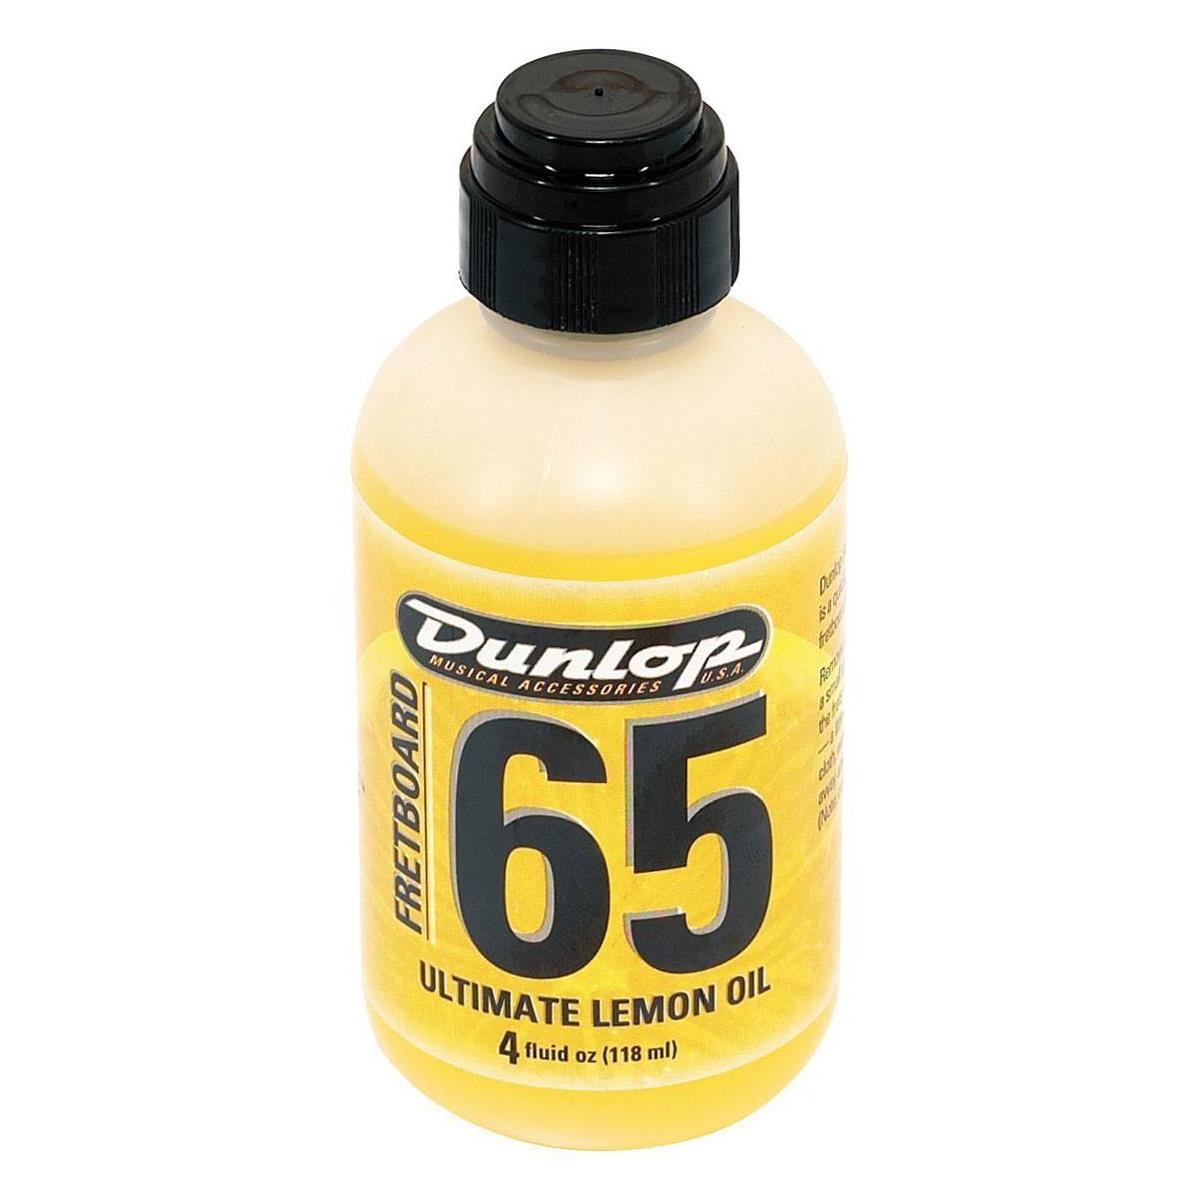 Image of Dunlop Jim Dunlop 6554 4 oz Ultimate Lemon Oil